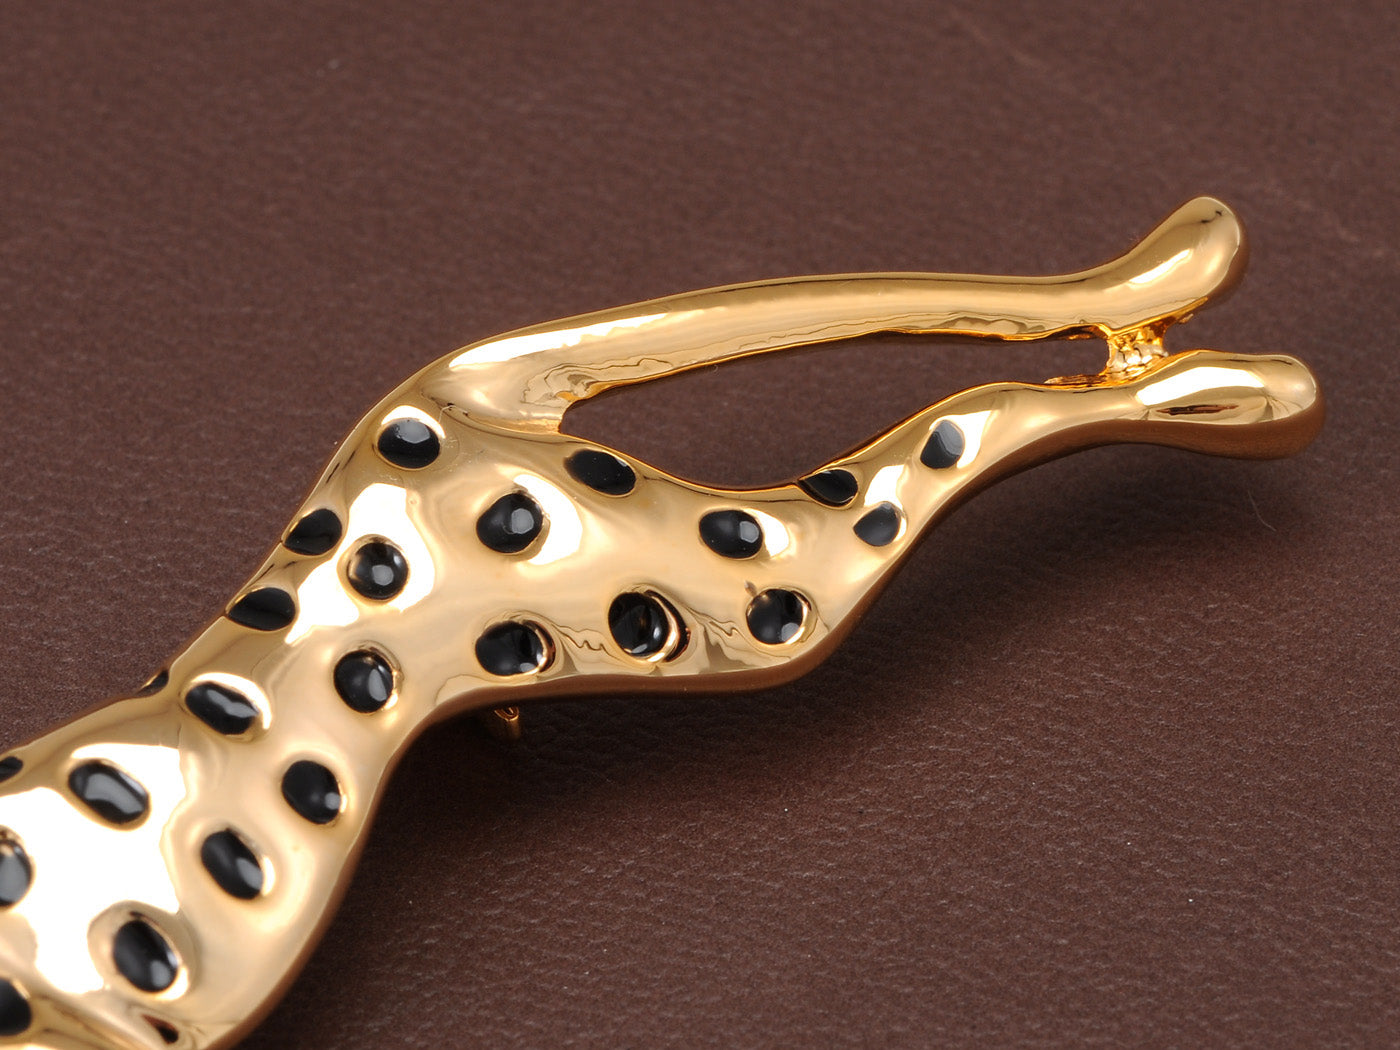 Enamel Leopard Cougar Brooch Pin